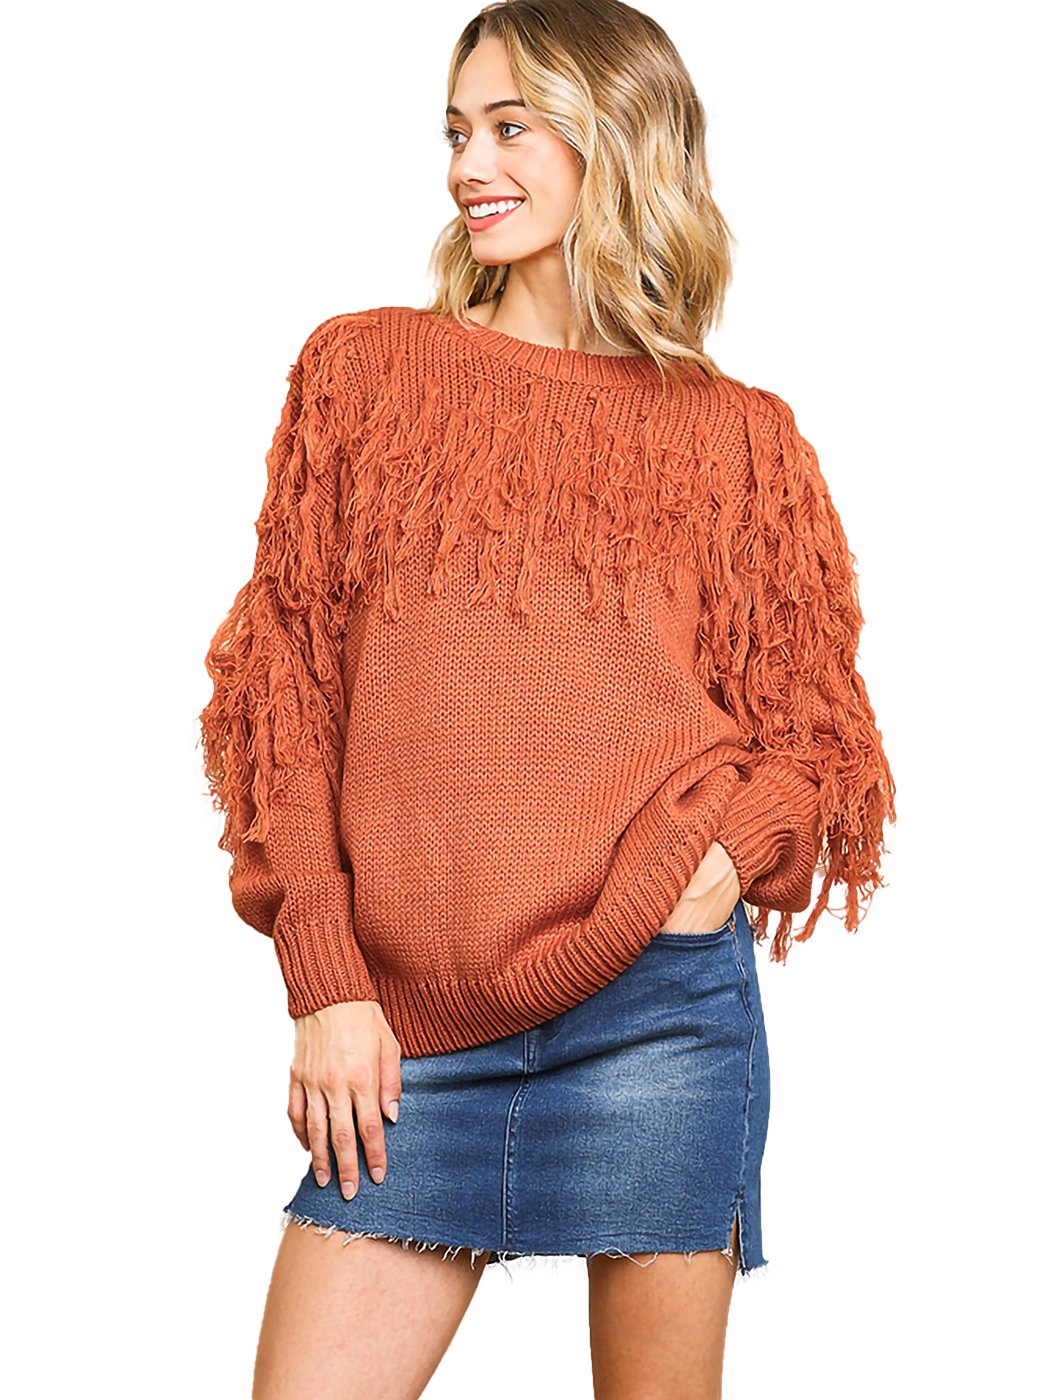 Fringe Tassel Knit Sweater Top